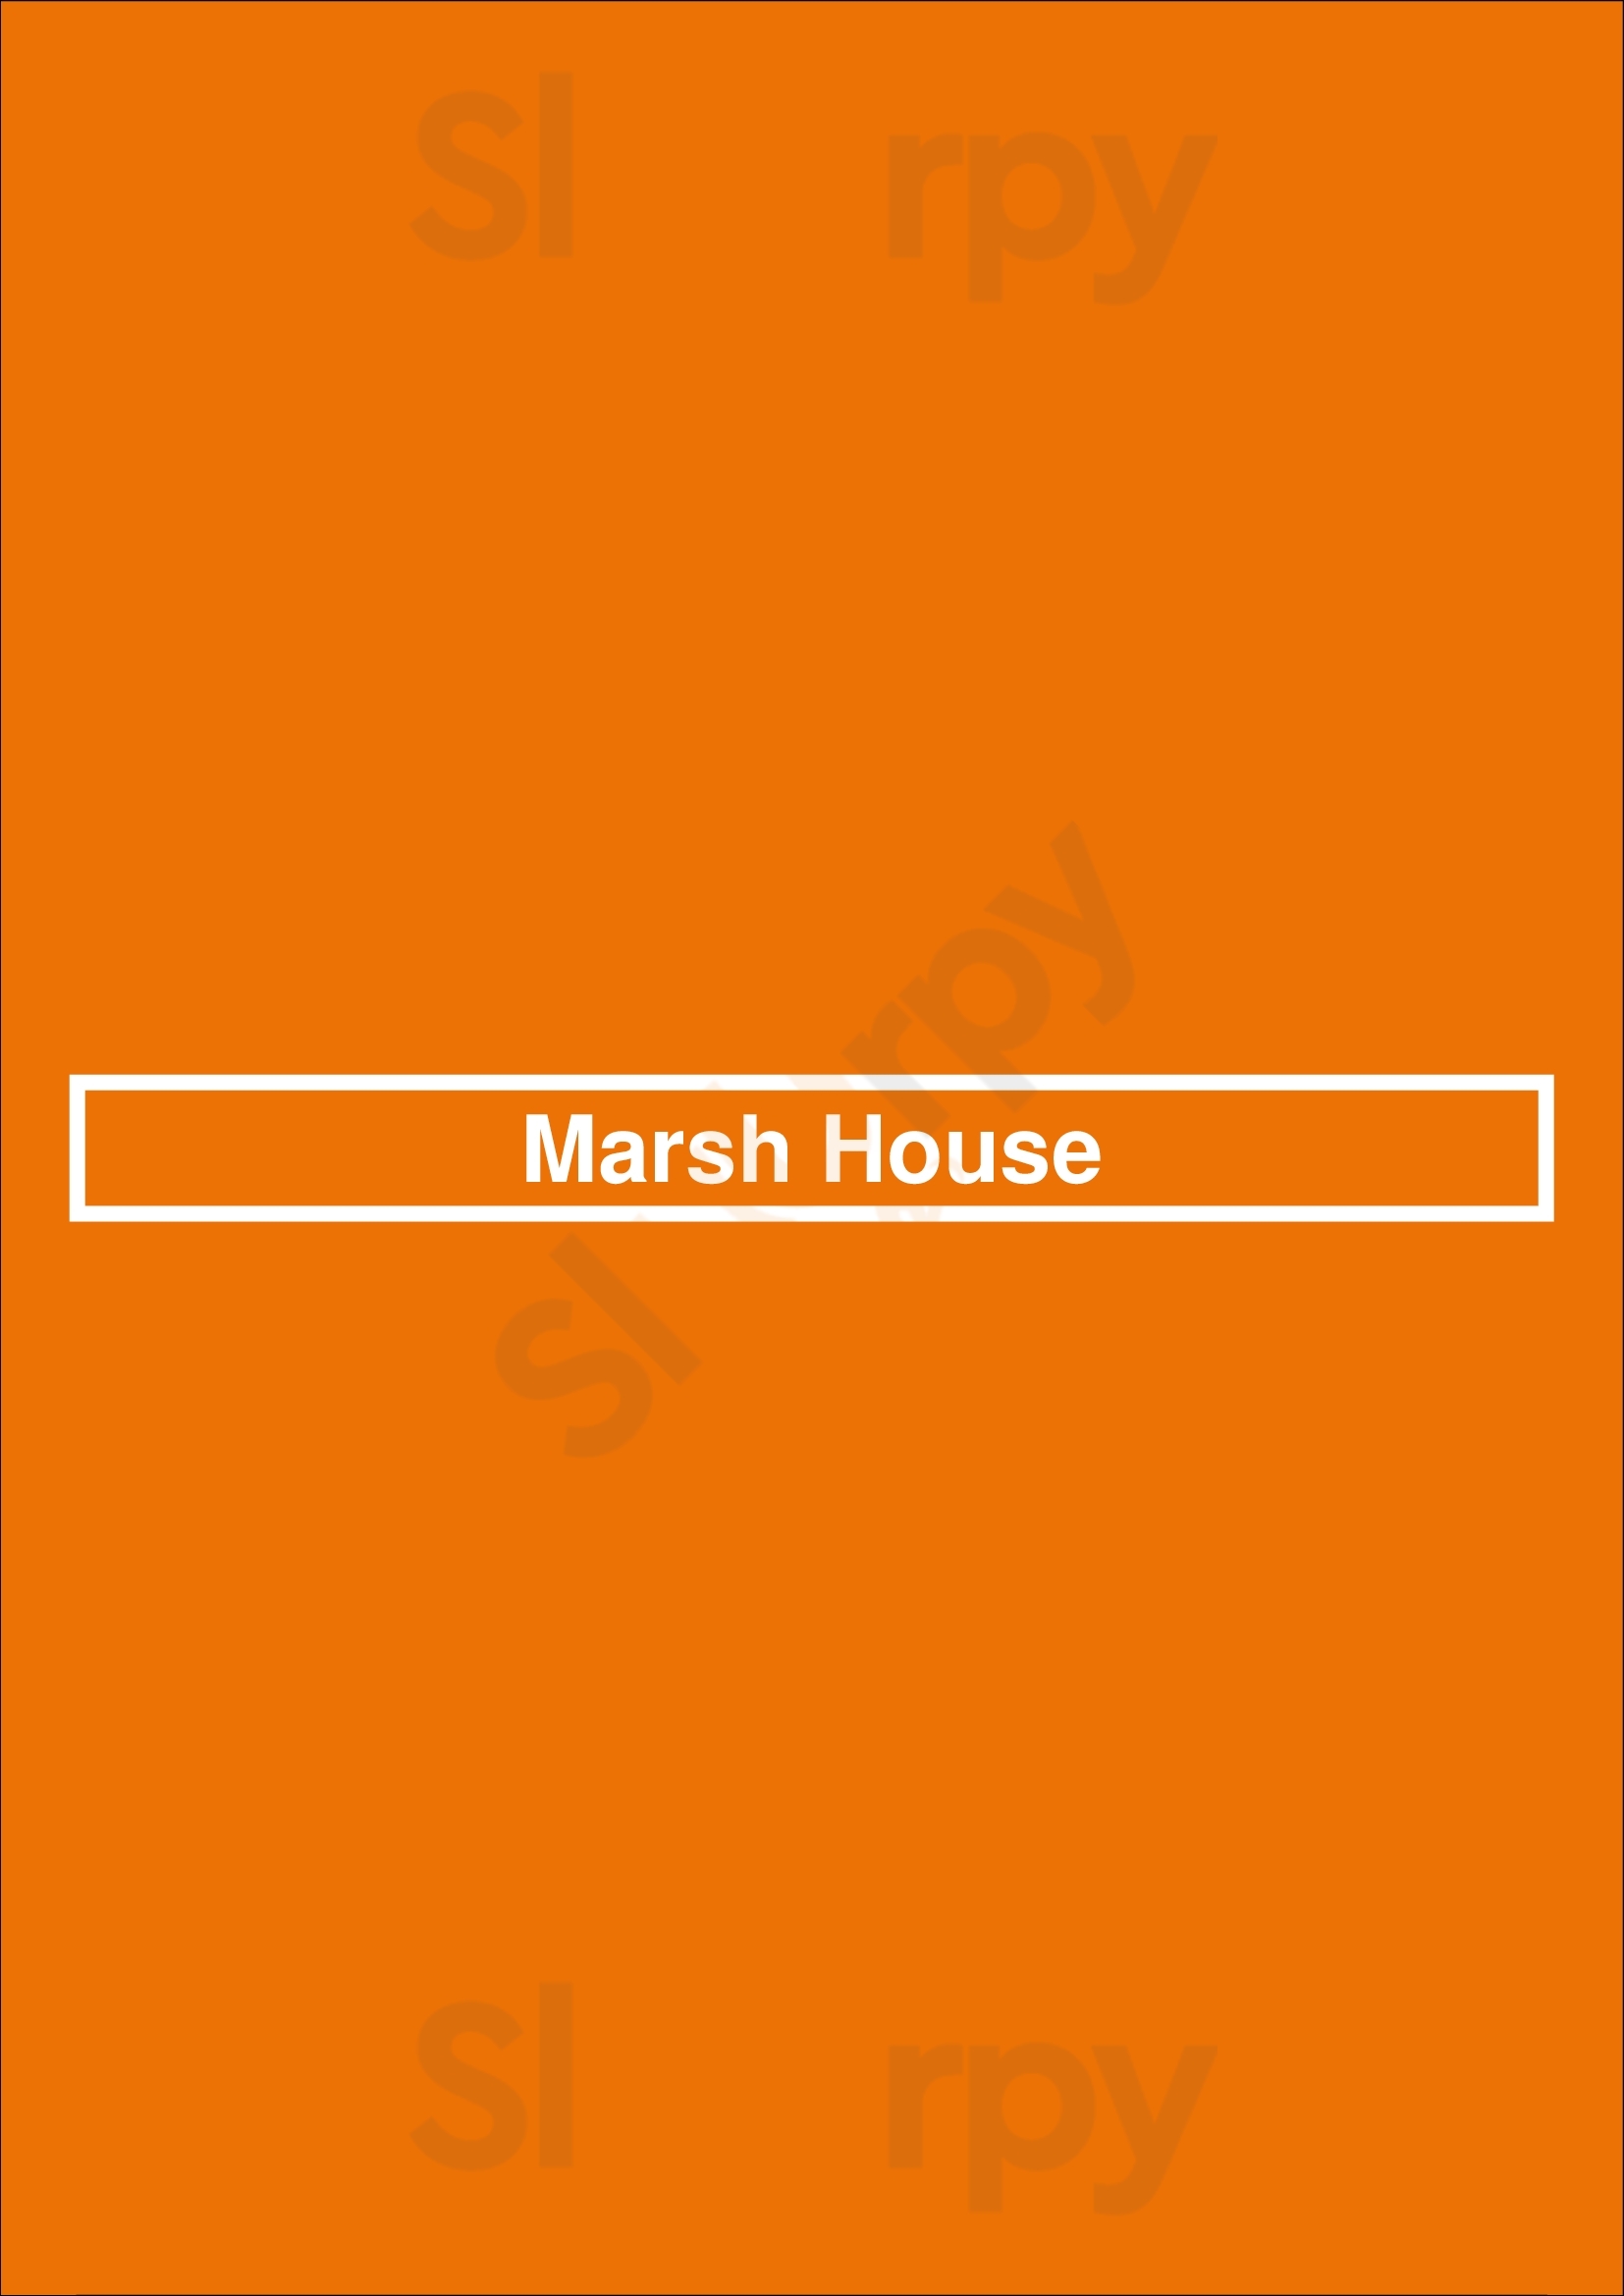 Marsh House Nashville Menu - 1